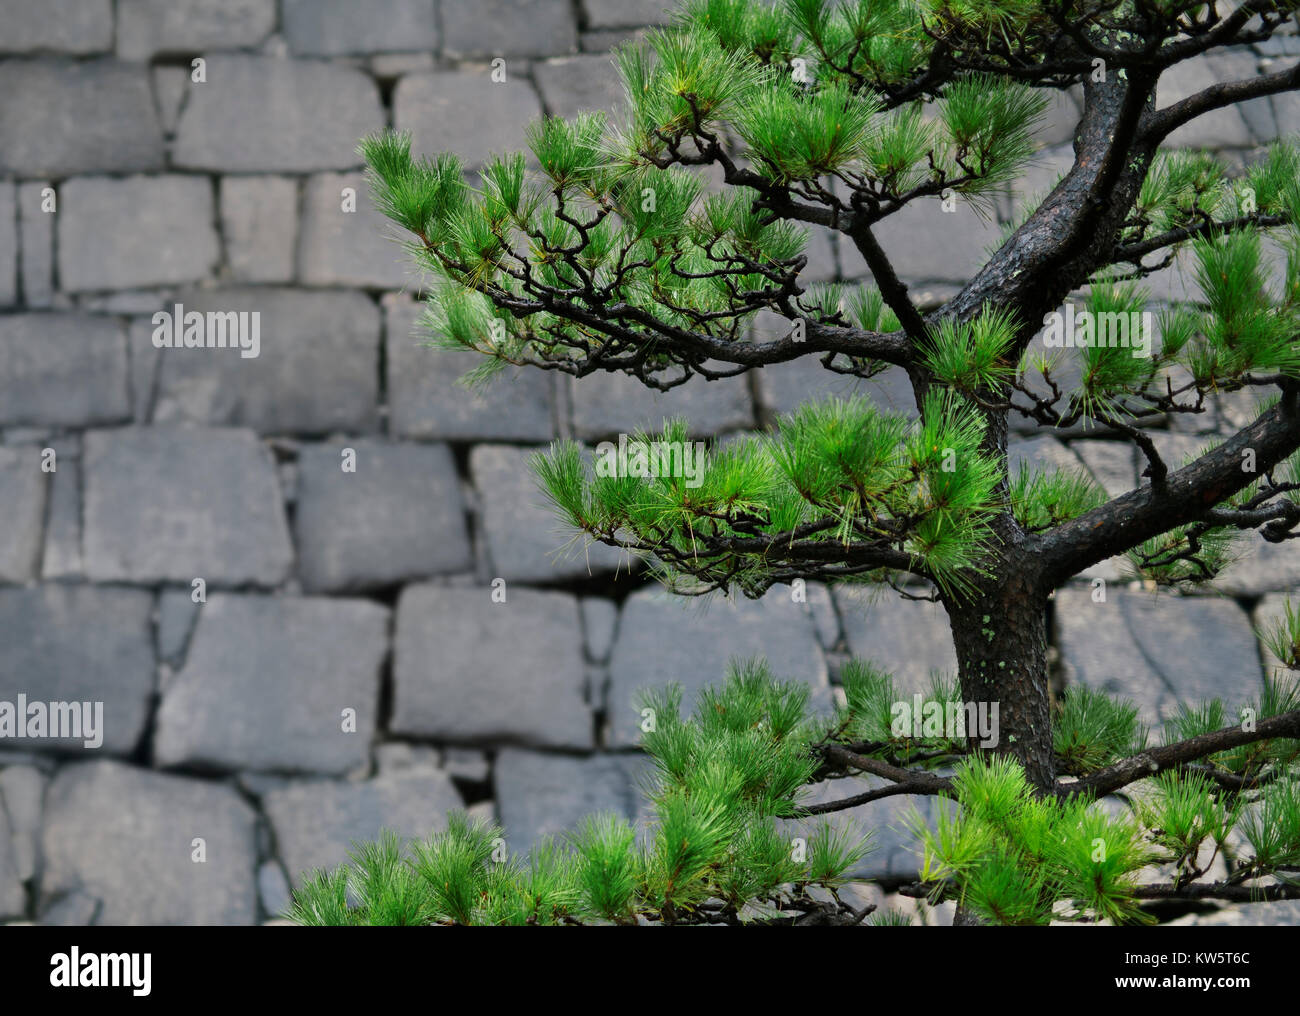 Pin noir japonais tordues, Pinus thunbergii, Niwaki formés branches vertes sur fond de mur de pierre dans un jardin à Osaka, Japon Banque D'Images